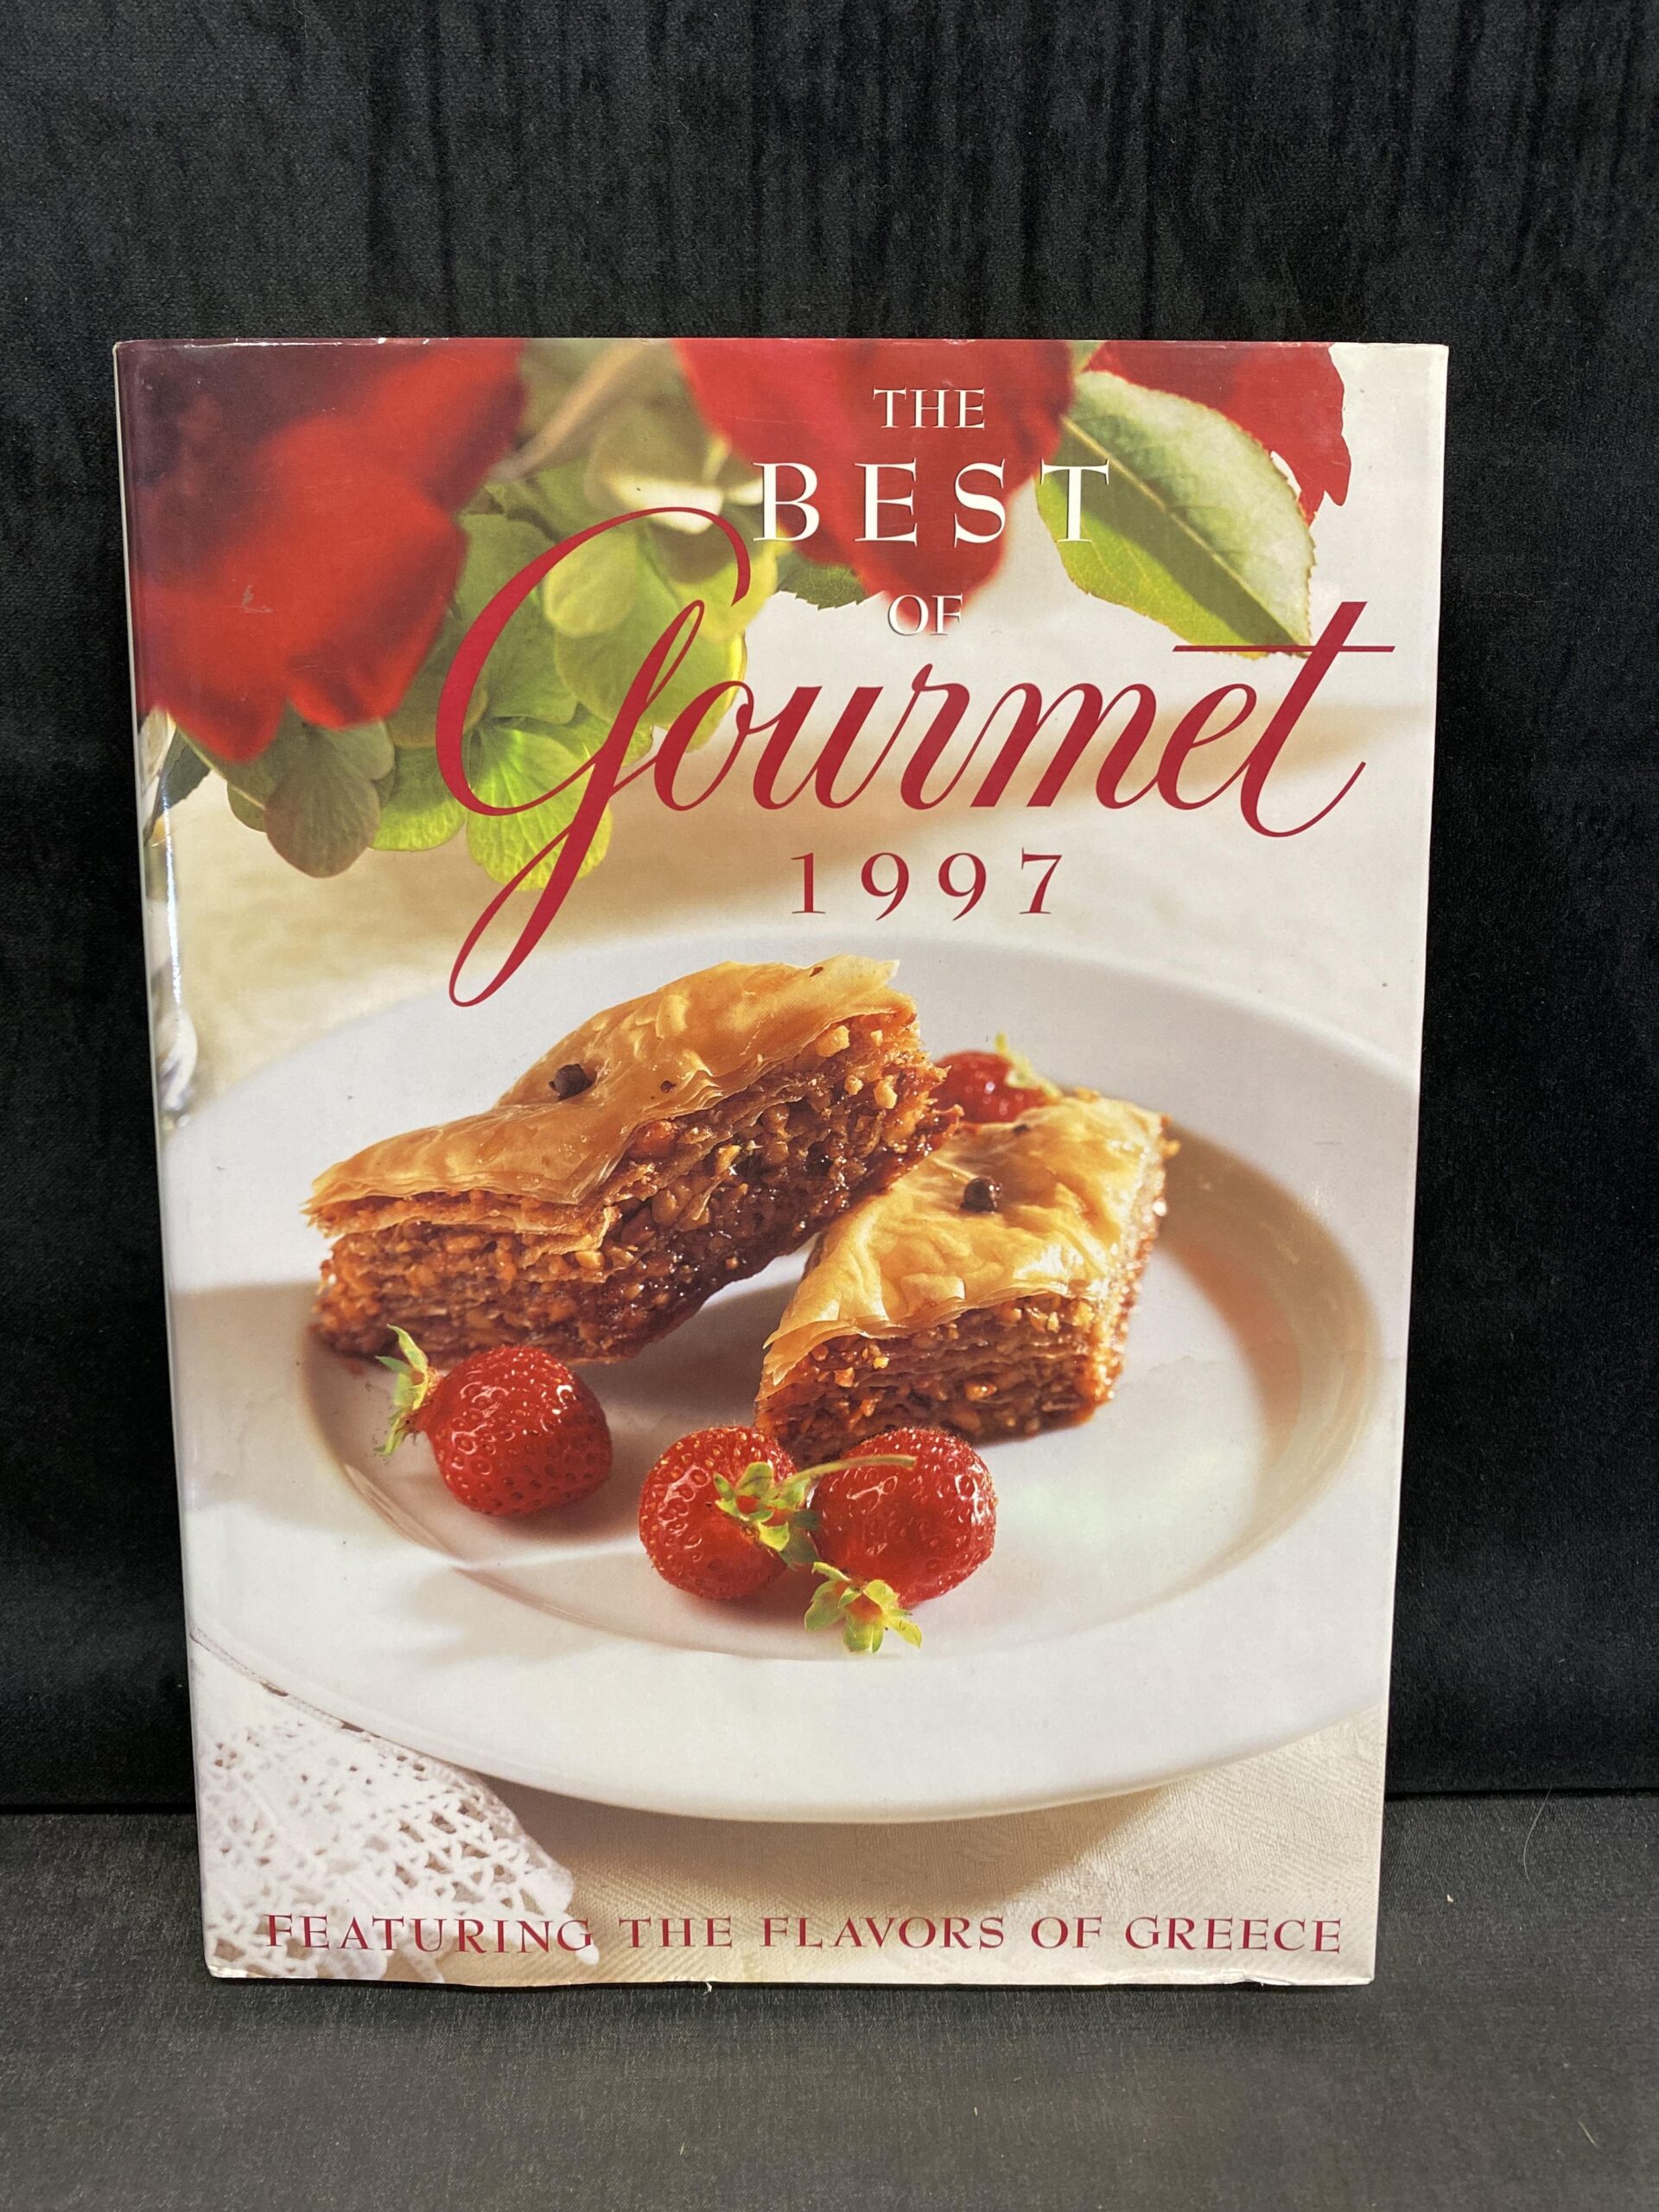 Cookbook – The Best of Gourmet 1997